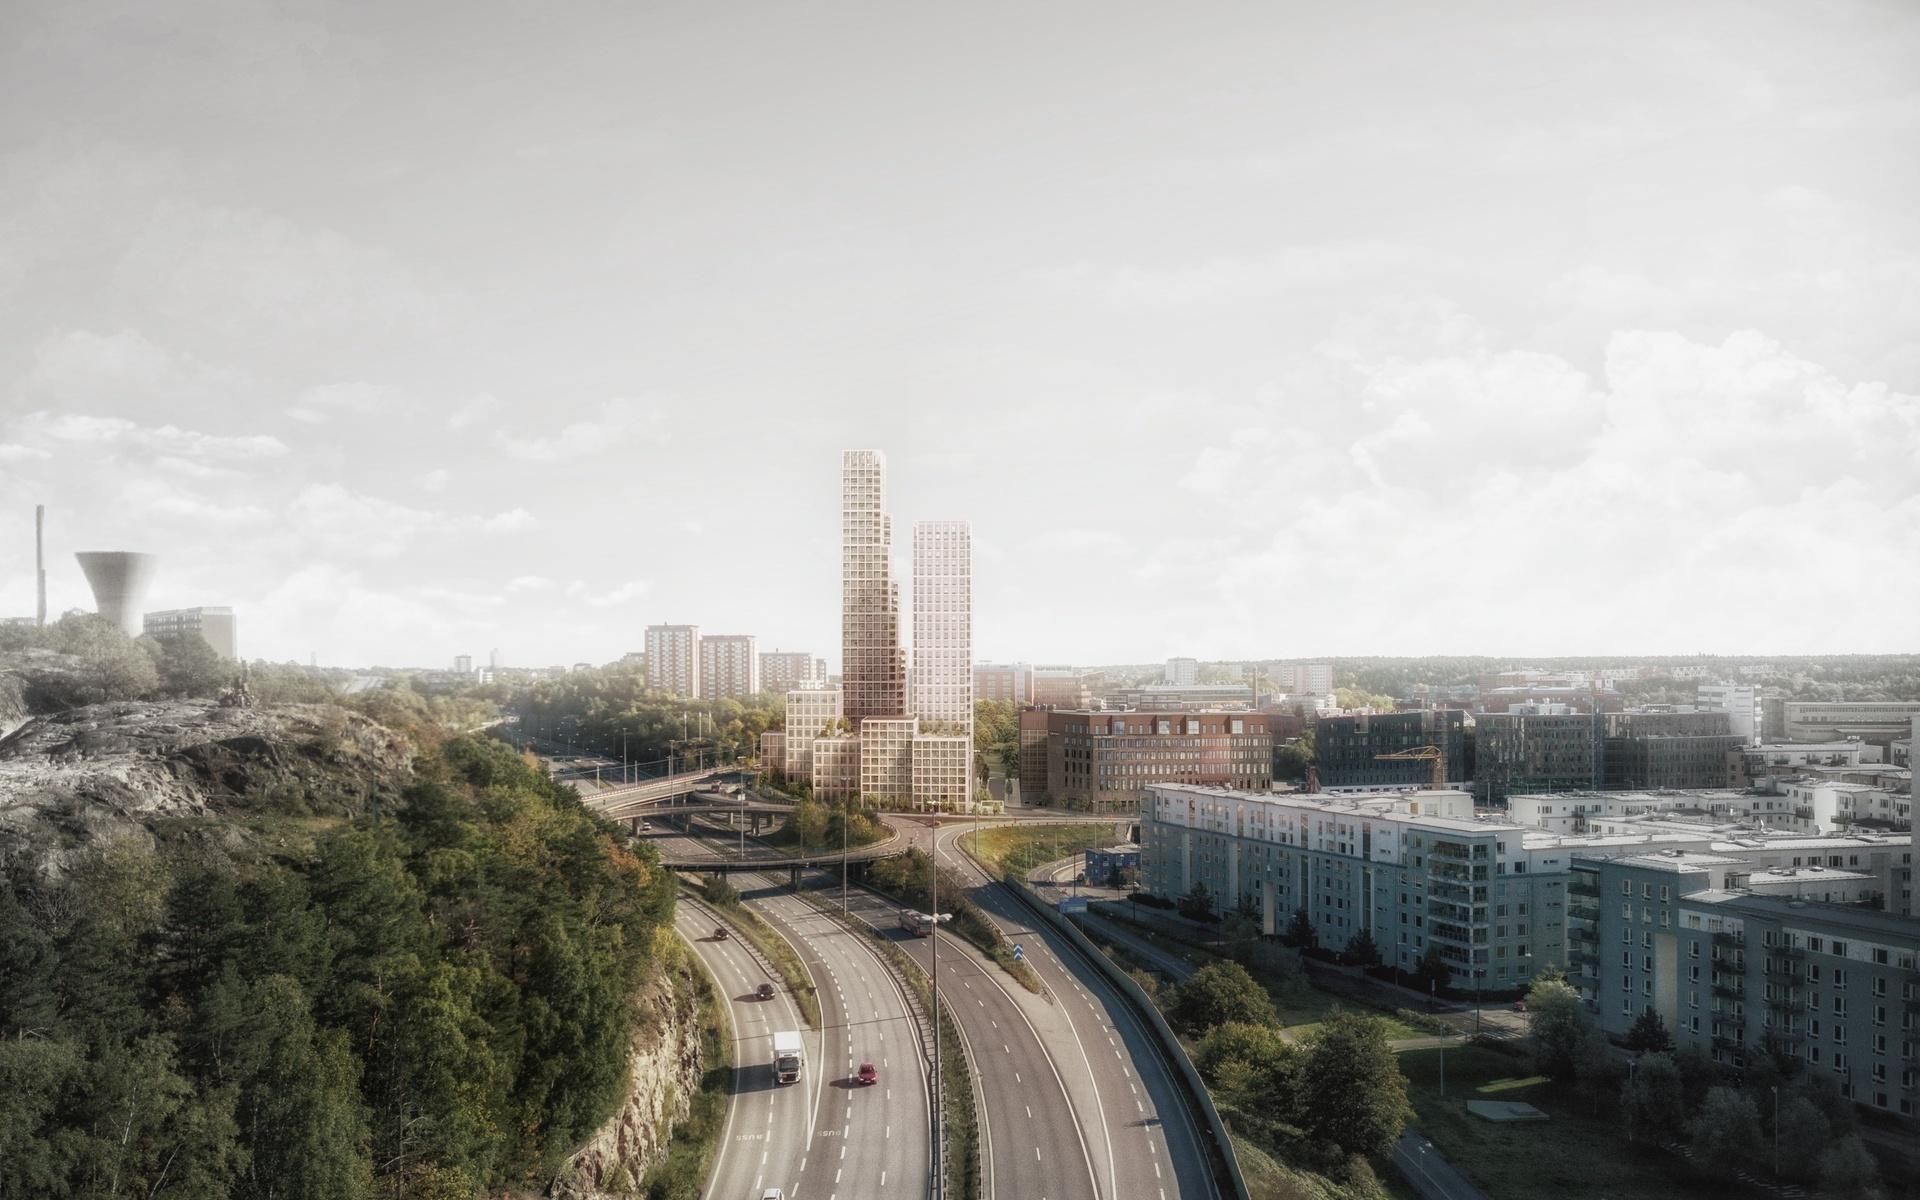 Projektet går under namnet Nacka Port och omfattar 33 700 kvadratmeter bostäder, kontor och handel. Dessutom planeras gym och festvåning högst upp i tornen, med utsikt över hela Stockholm.